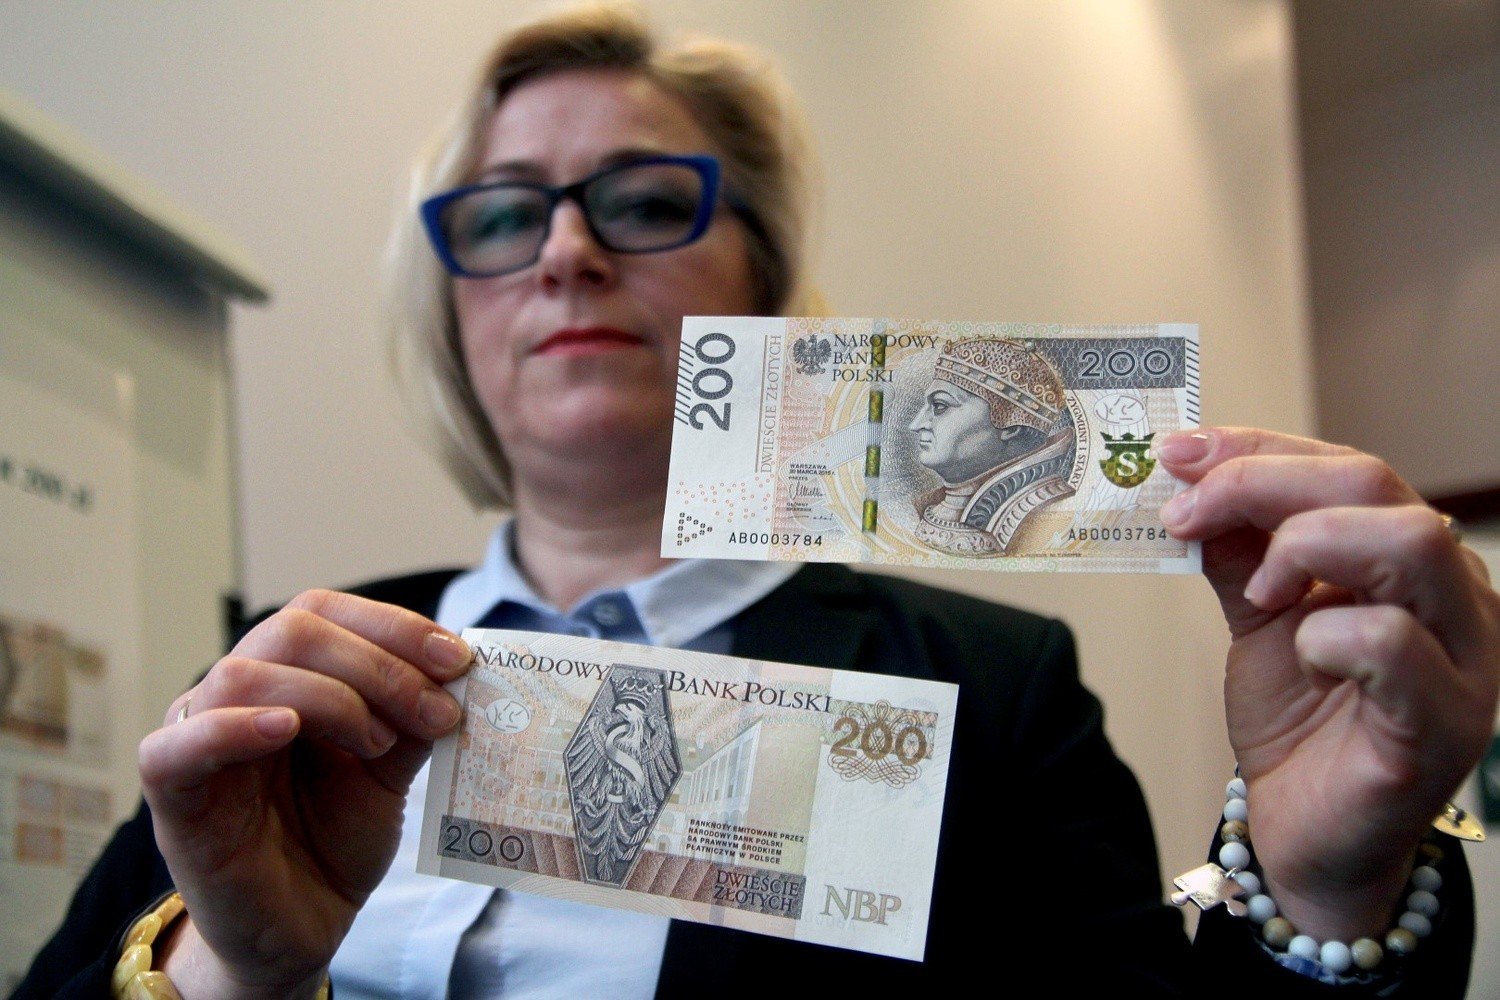 Nowy banknot 200 zł. Czym się różni od poprzedniego? [ZDJĘCIA] | Dziennik  Bałtycki